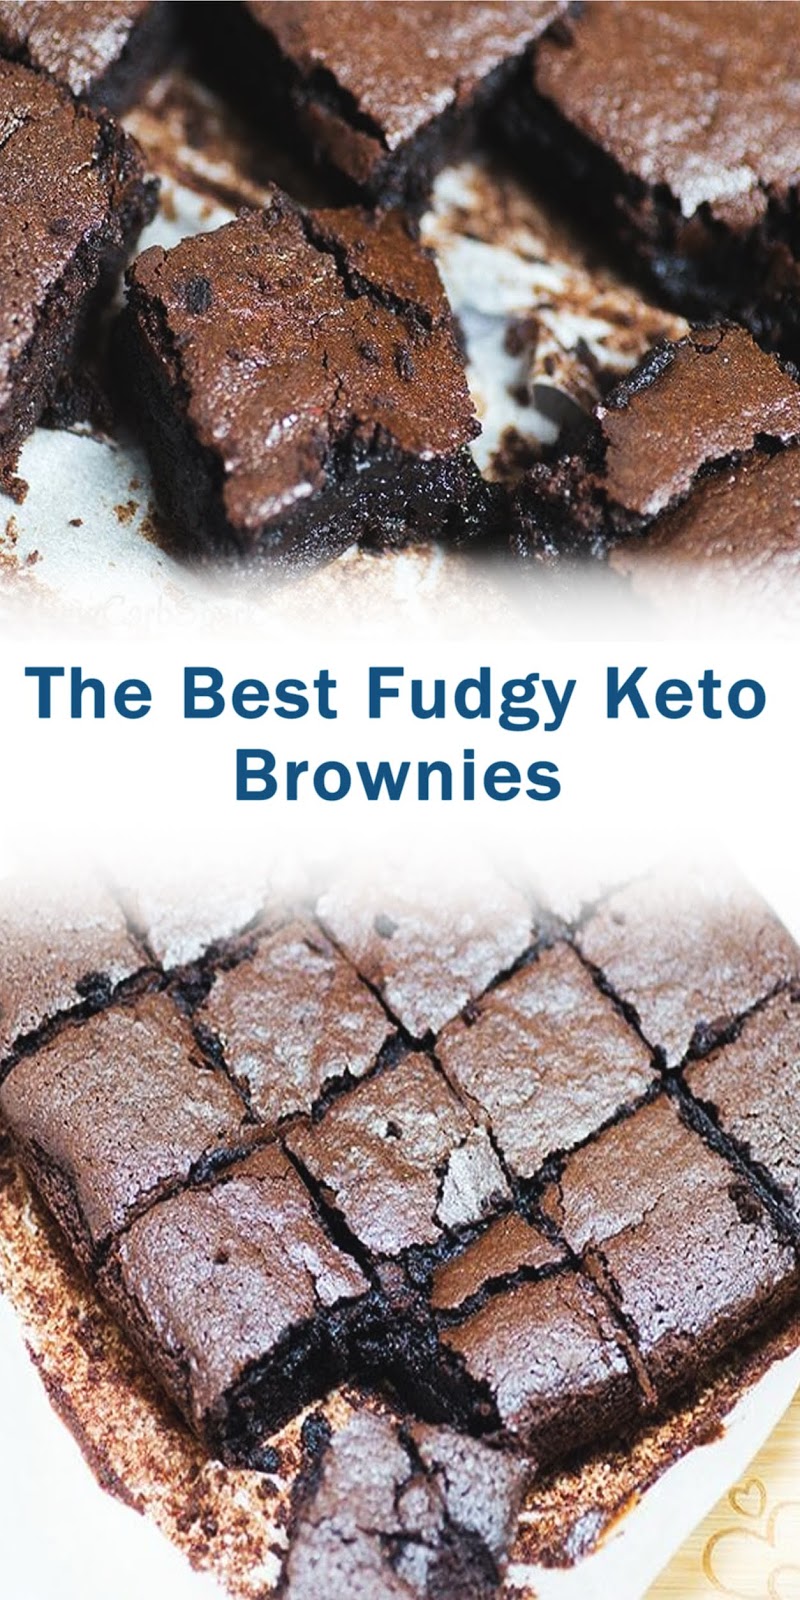 The Best Fudgy Keto Brownies